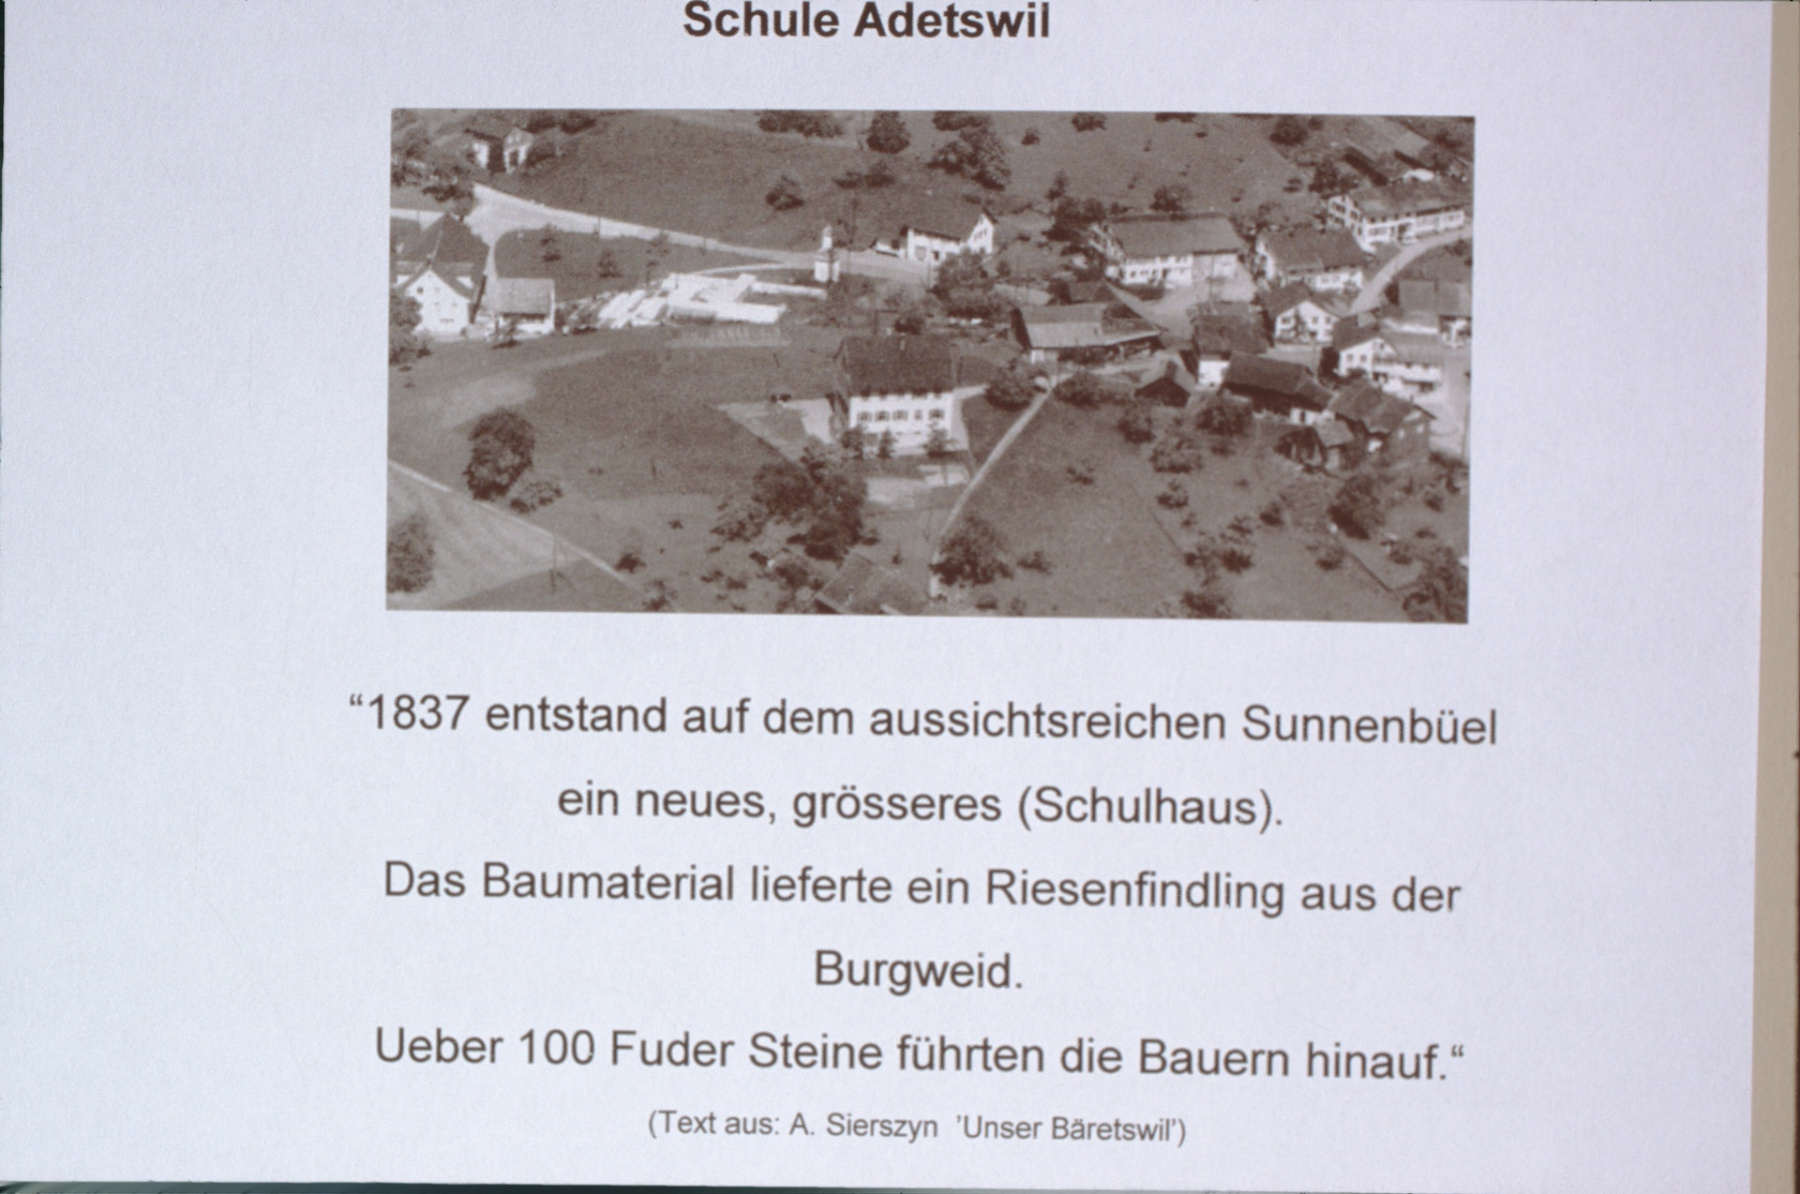 Schule Adetswil, Besonderes - Baumaterial vor allem von einem Findling in der Burgweid